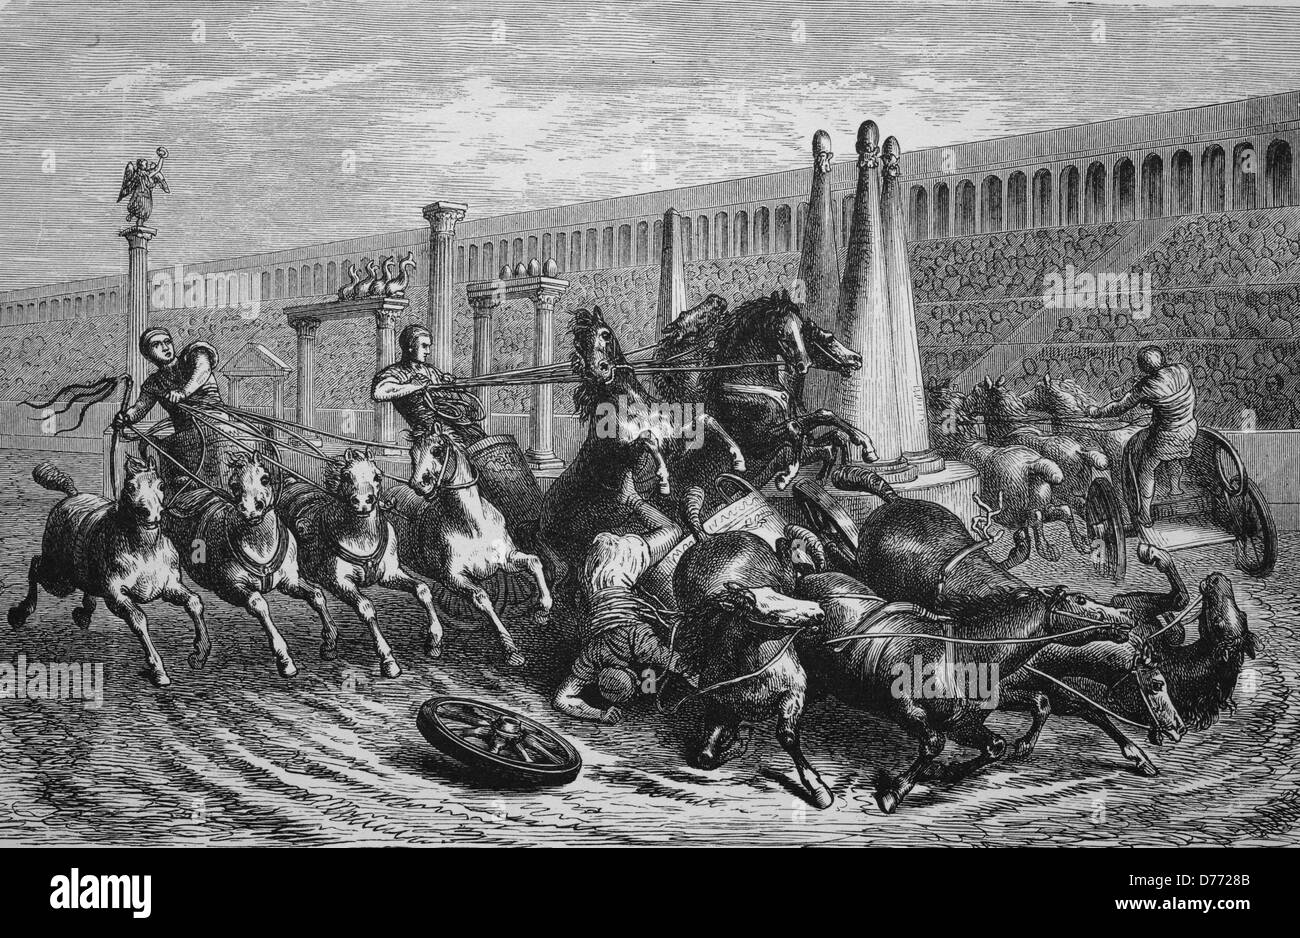 Gladiator lucha en la Antigua Roma, Italia, xilografía desde 1880 Foto de stock